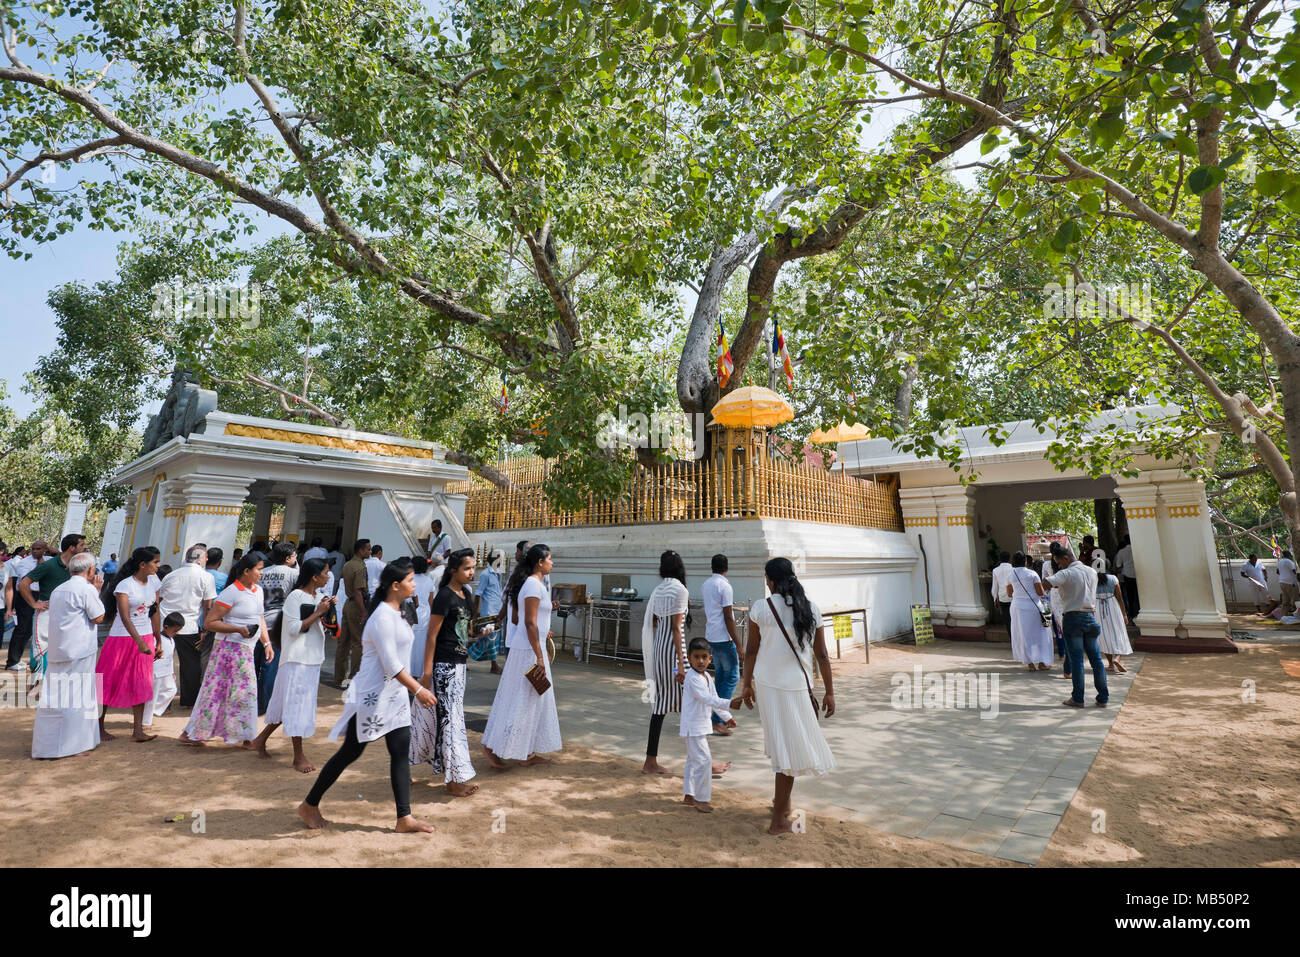 Horizontal view of the Bodhi tree at Jaya Sri Maha Bodhi in Anuradhapura, Sri Lanka. Stock Photo